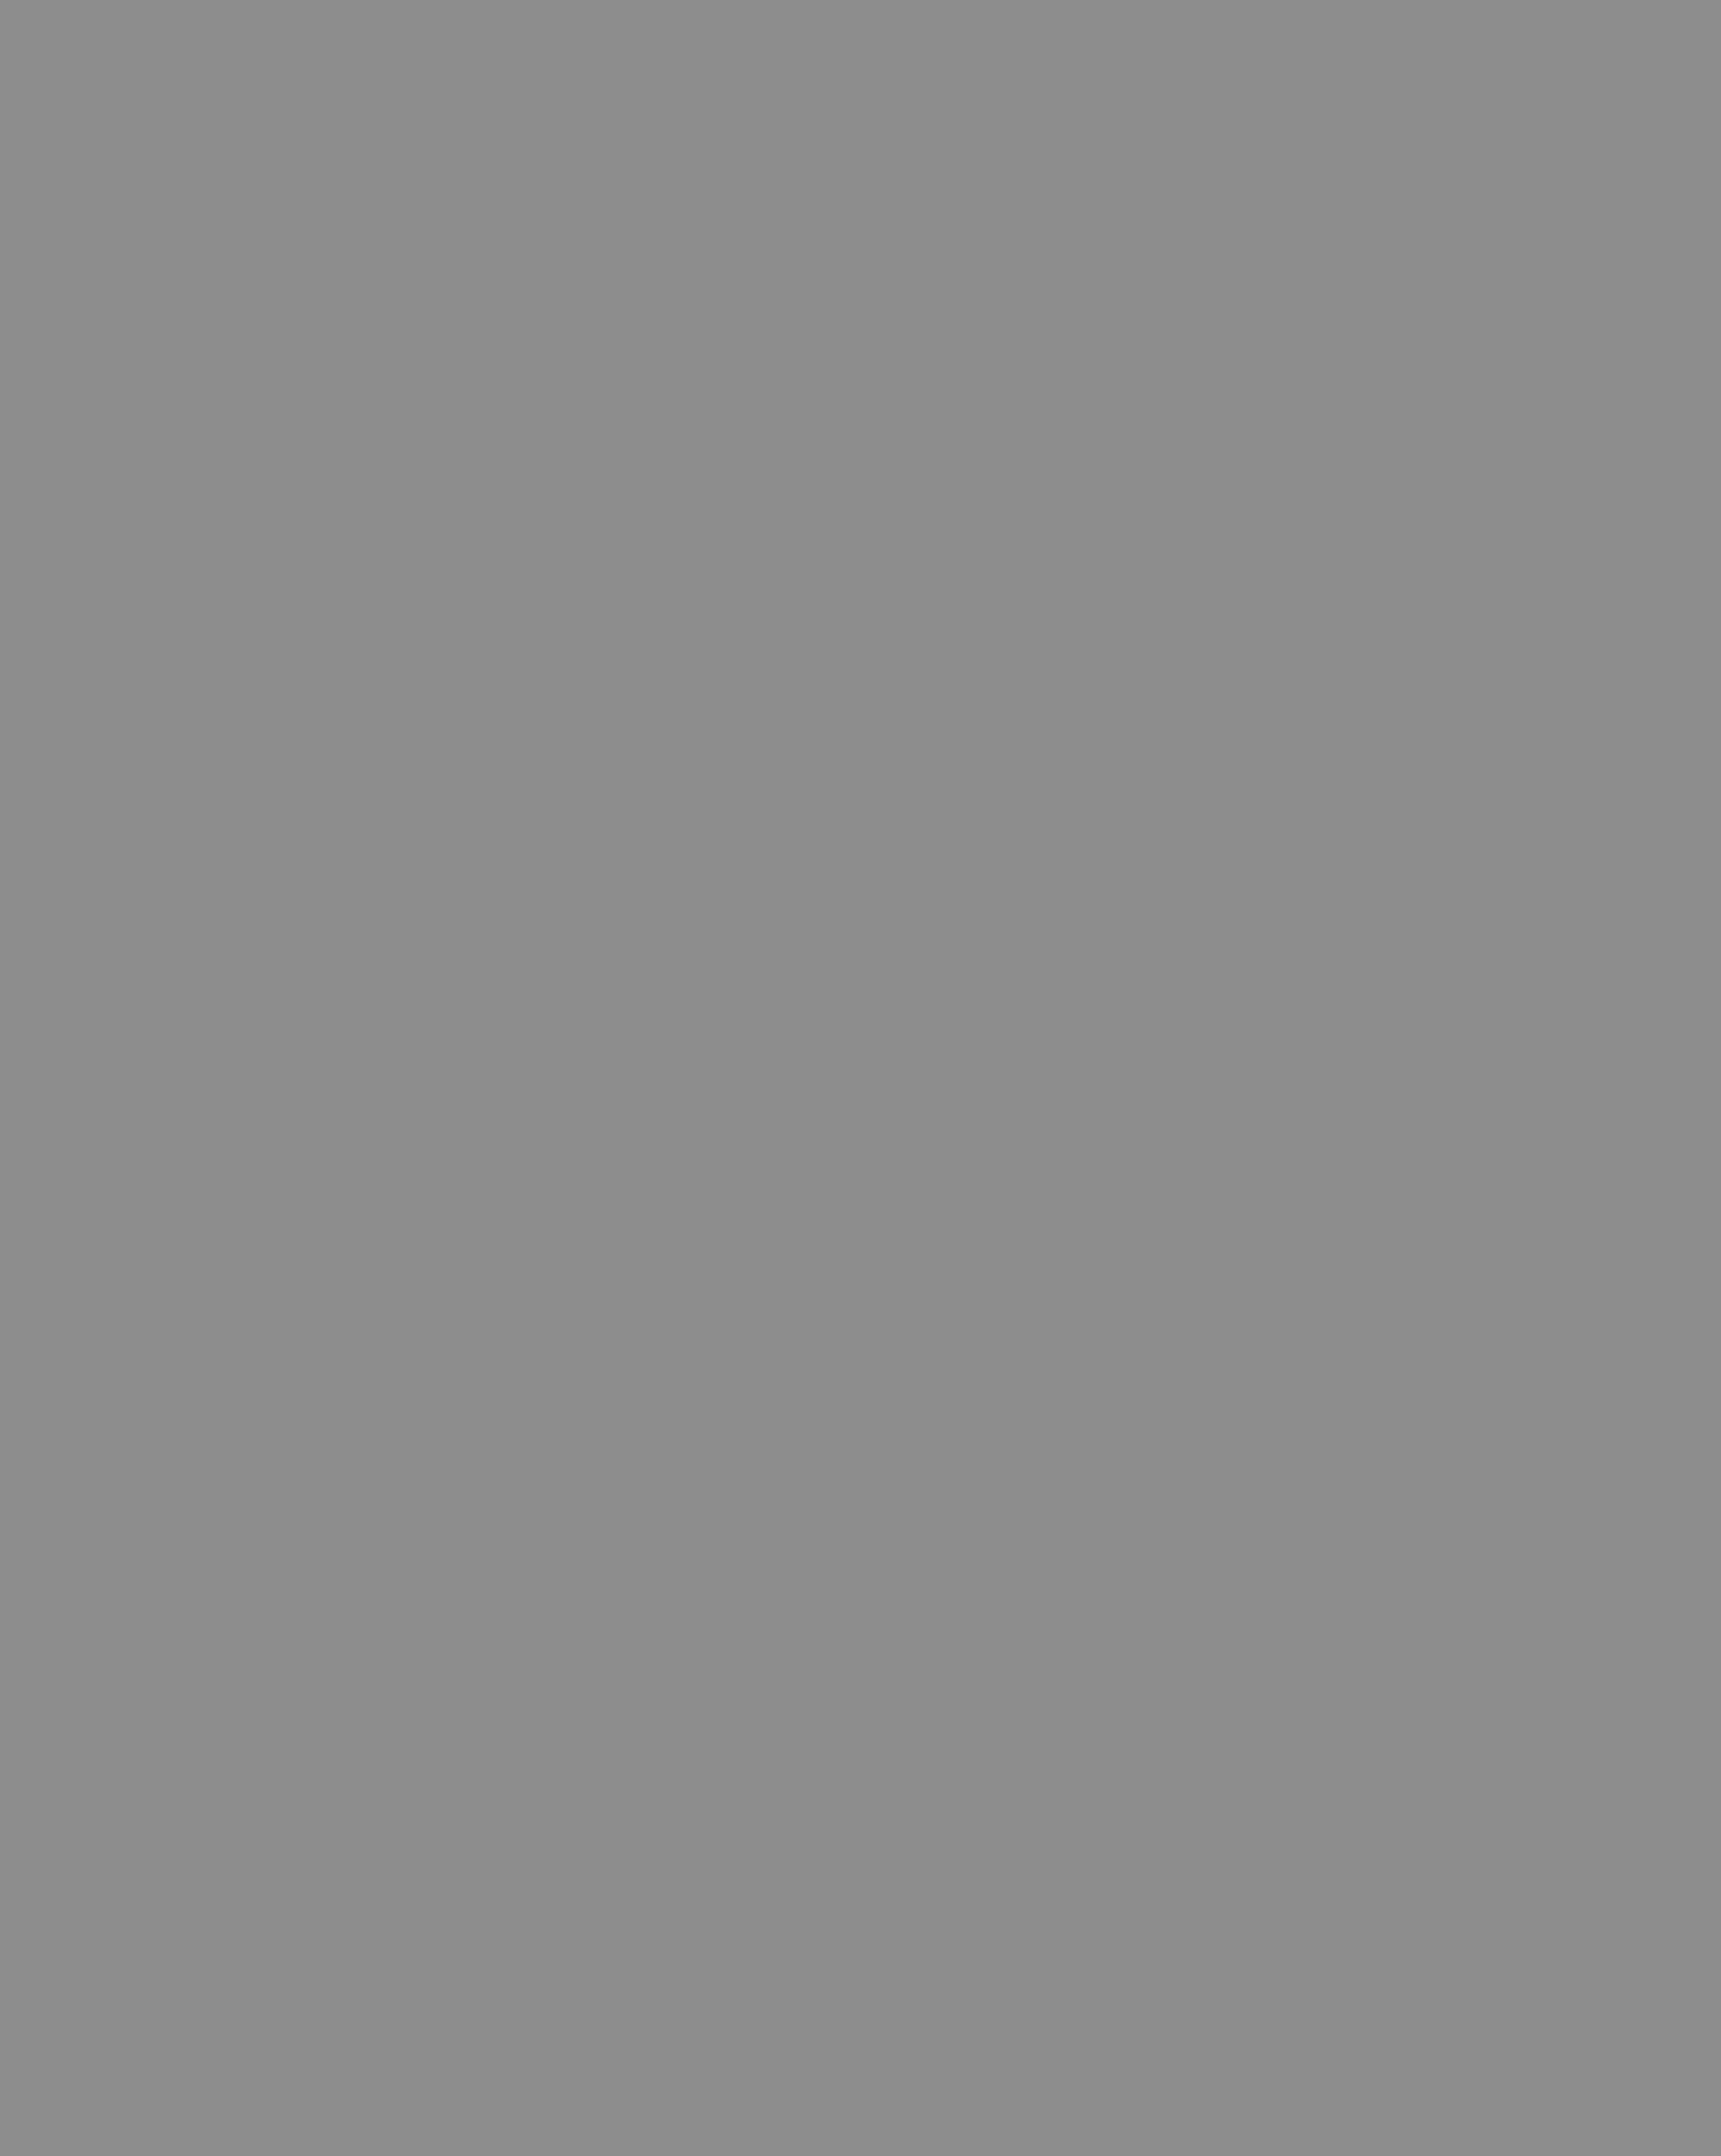 Марк Захаров на репетиции спектакля. Москва, 1985 год. Фотография: Олег Иванов / Фотохроника ТАСС